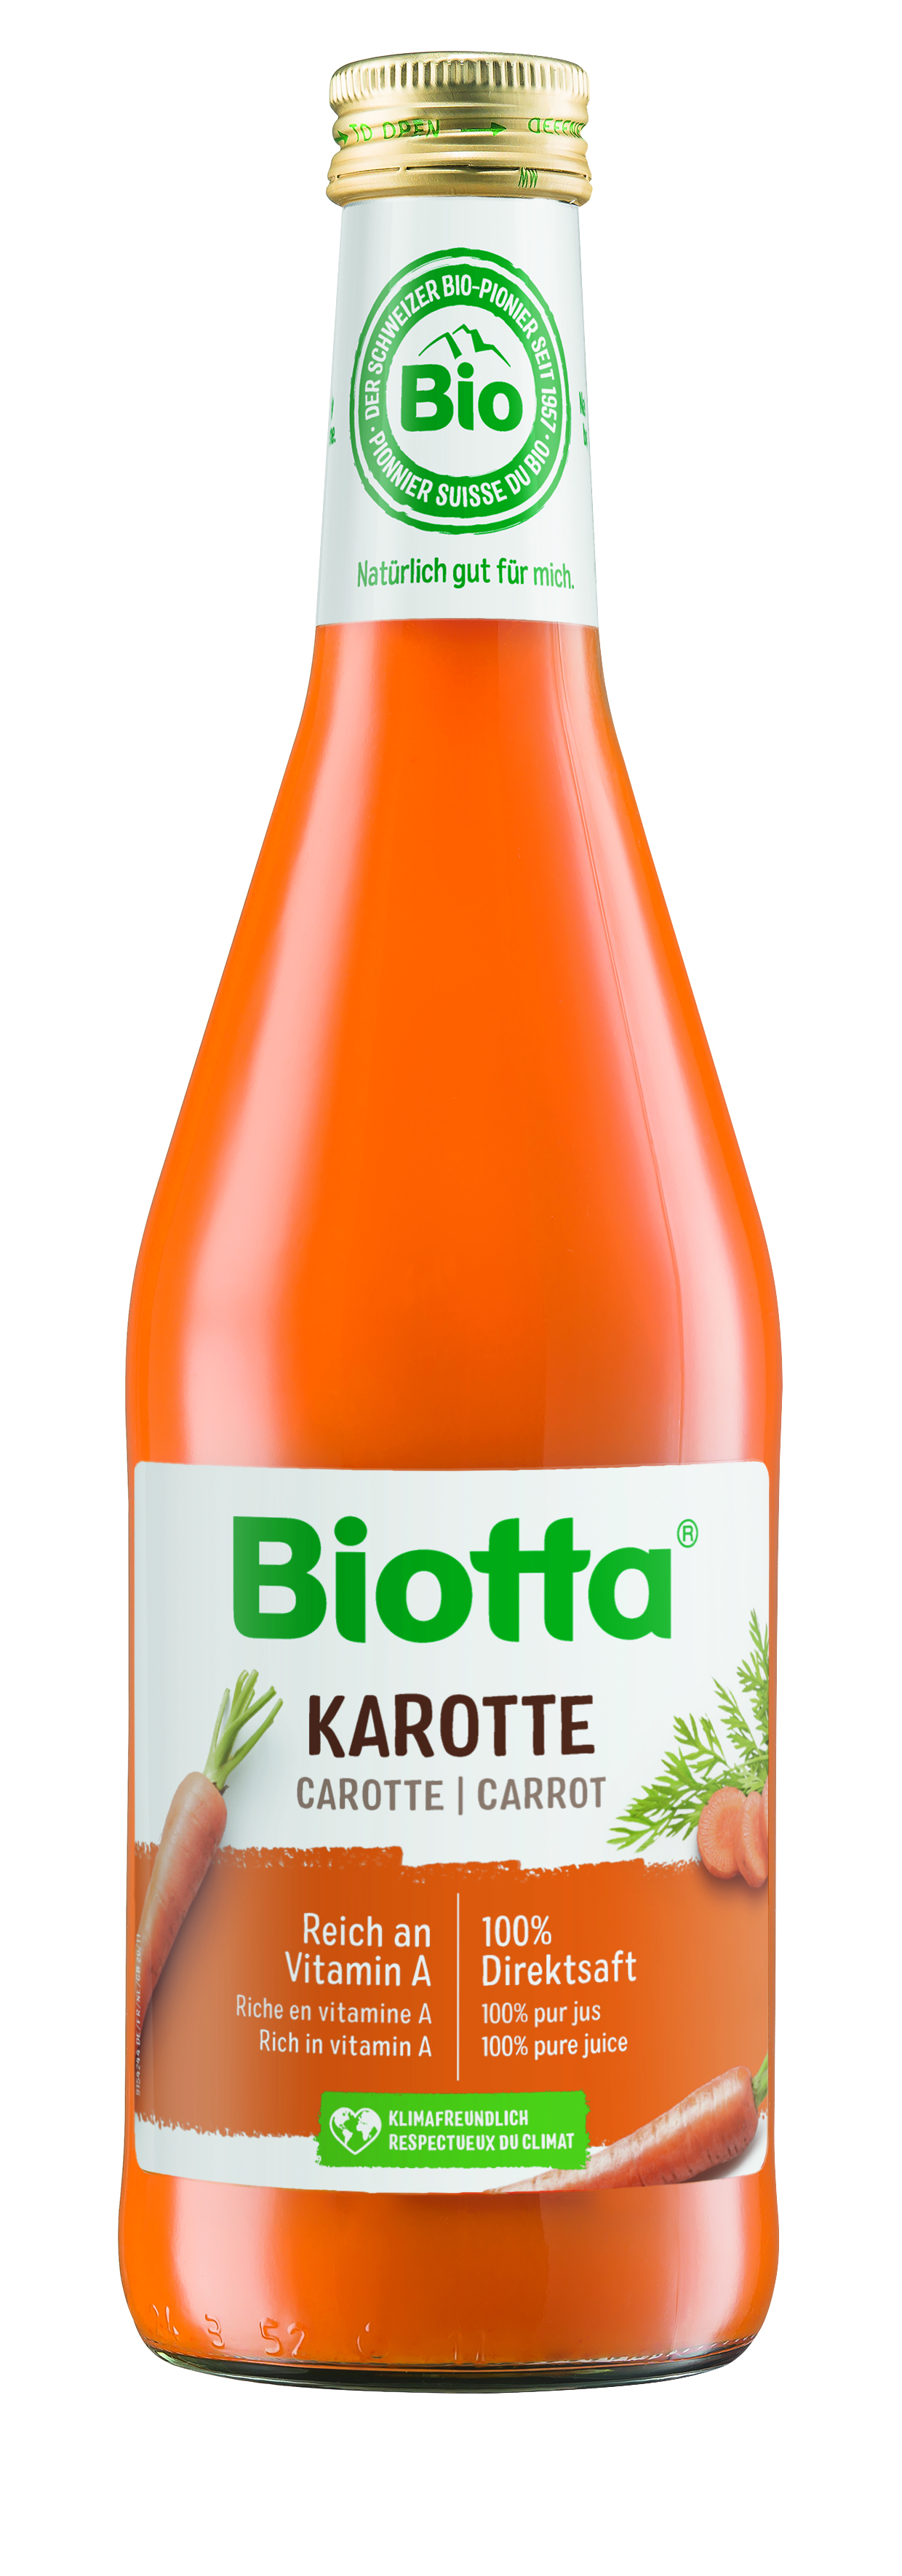 Biotta mrkvová šťava 6 kartónov - cena za 1 ks 4,055€ s DPH